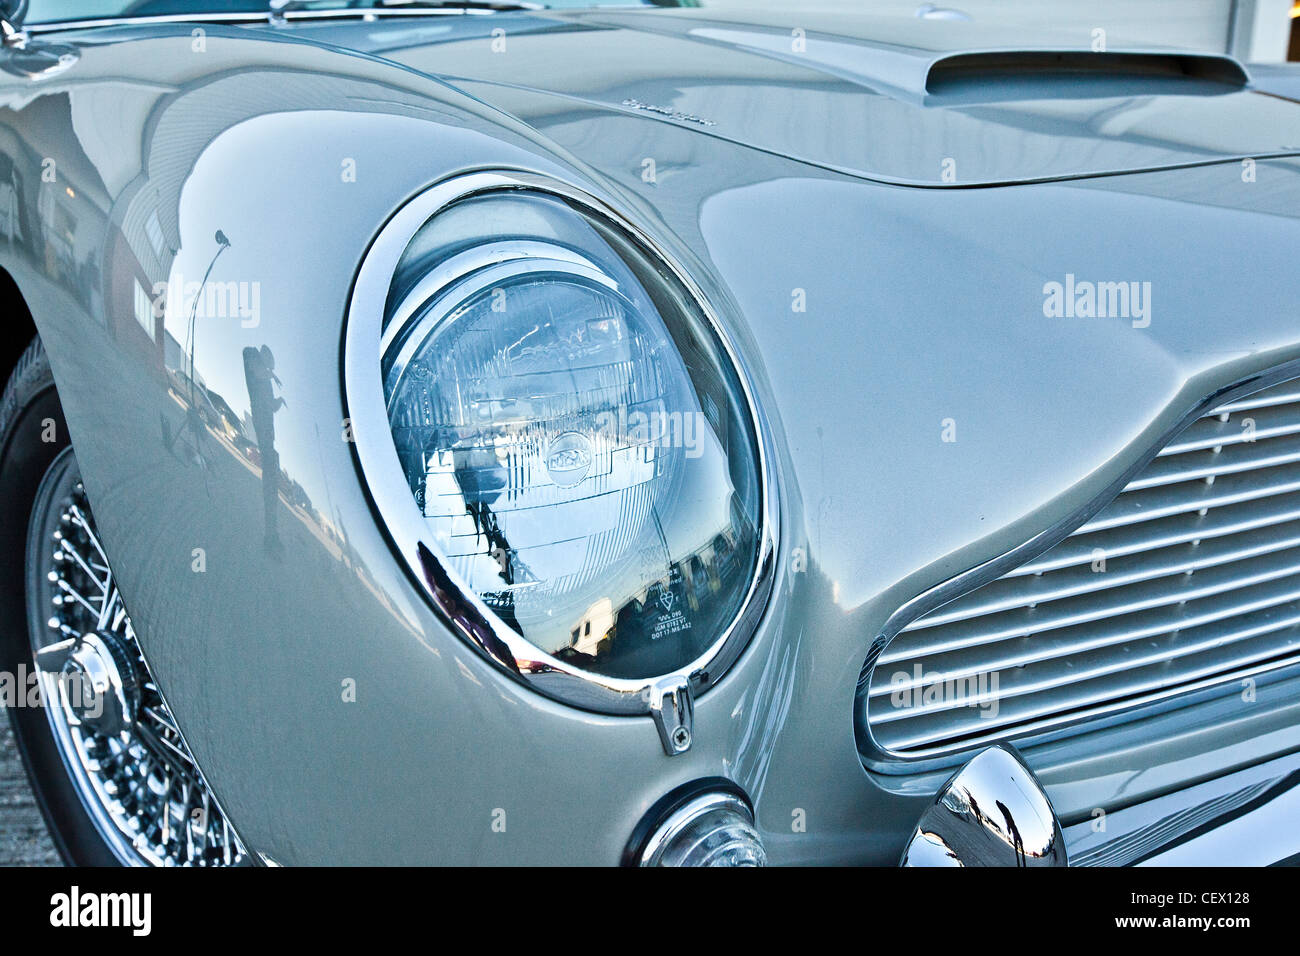 Carrocería en Aston Martin DB5, James Bond classic car Foto de stock